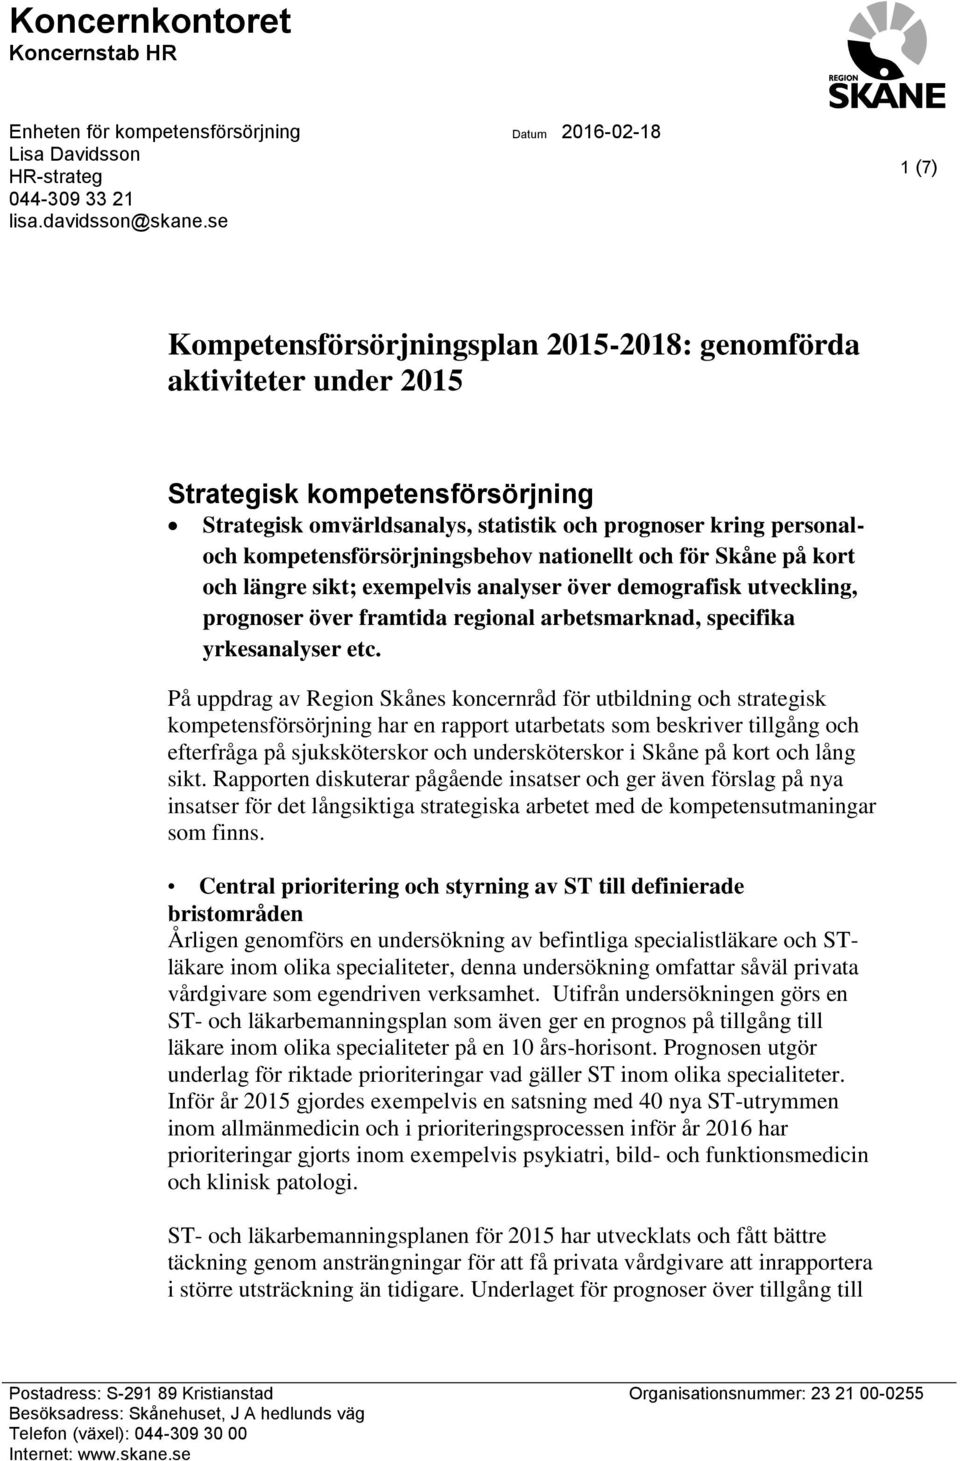 kompetensförsörjningsbehov nationellt och för Skåne på kort och längre sikt; exempelvis analyser över demografisk utveckling, prognoser över framtida regional arbetsmarknad, specifika yrkesanalyser